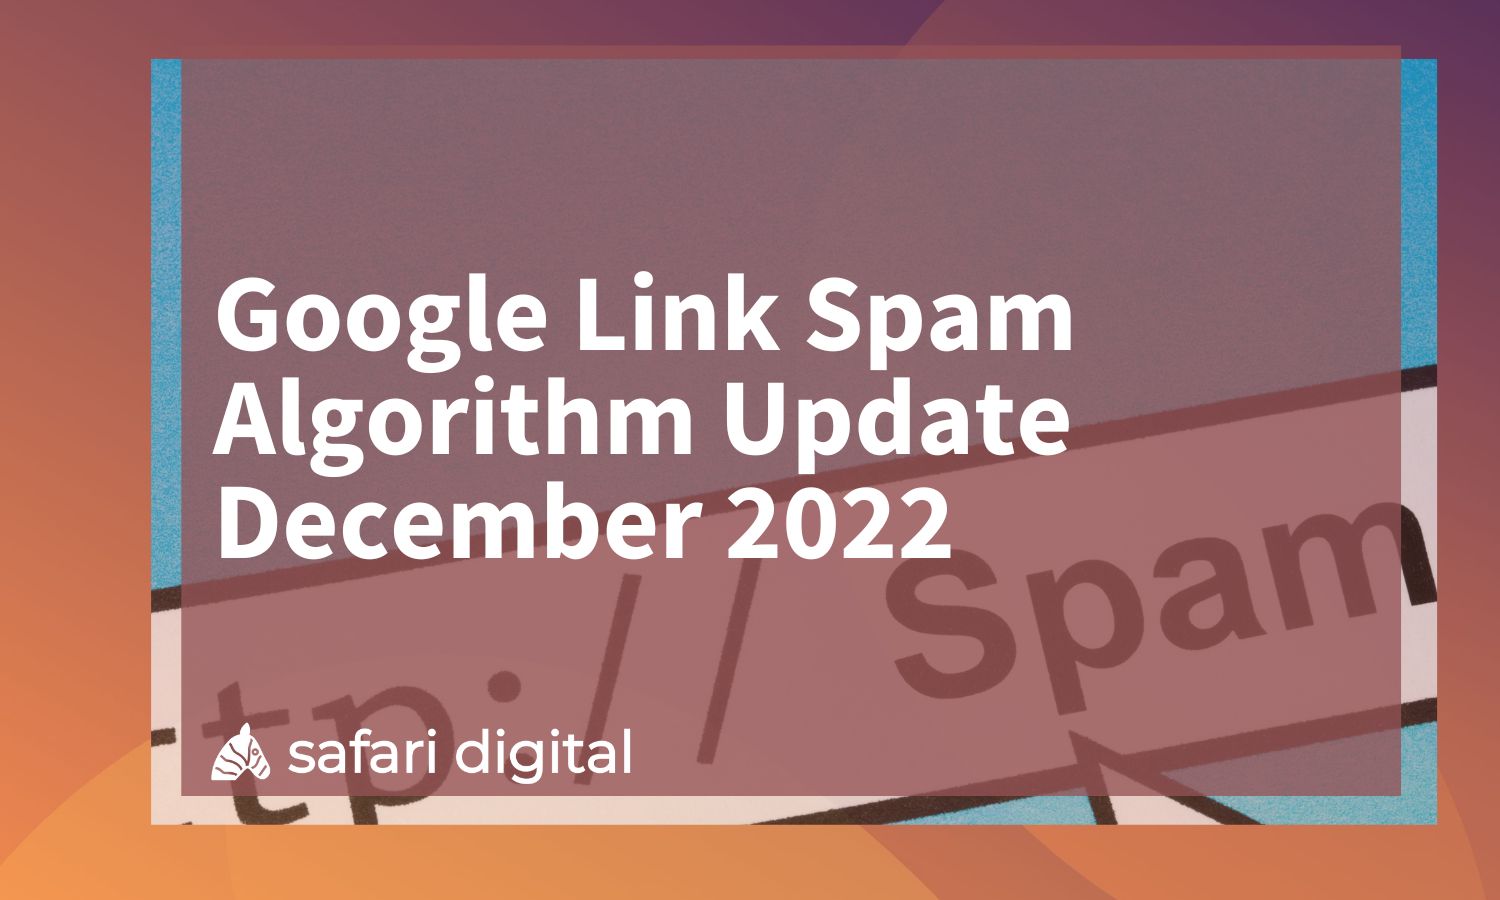 Google Link Spam Algorithm Update December 2022